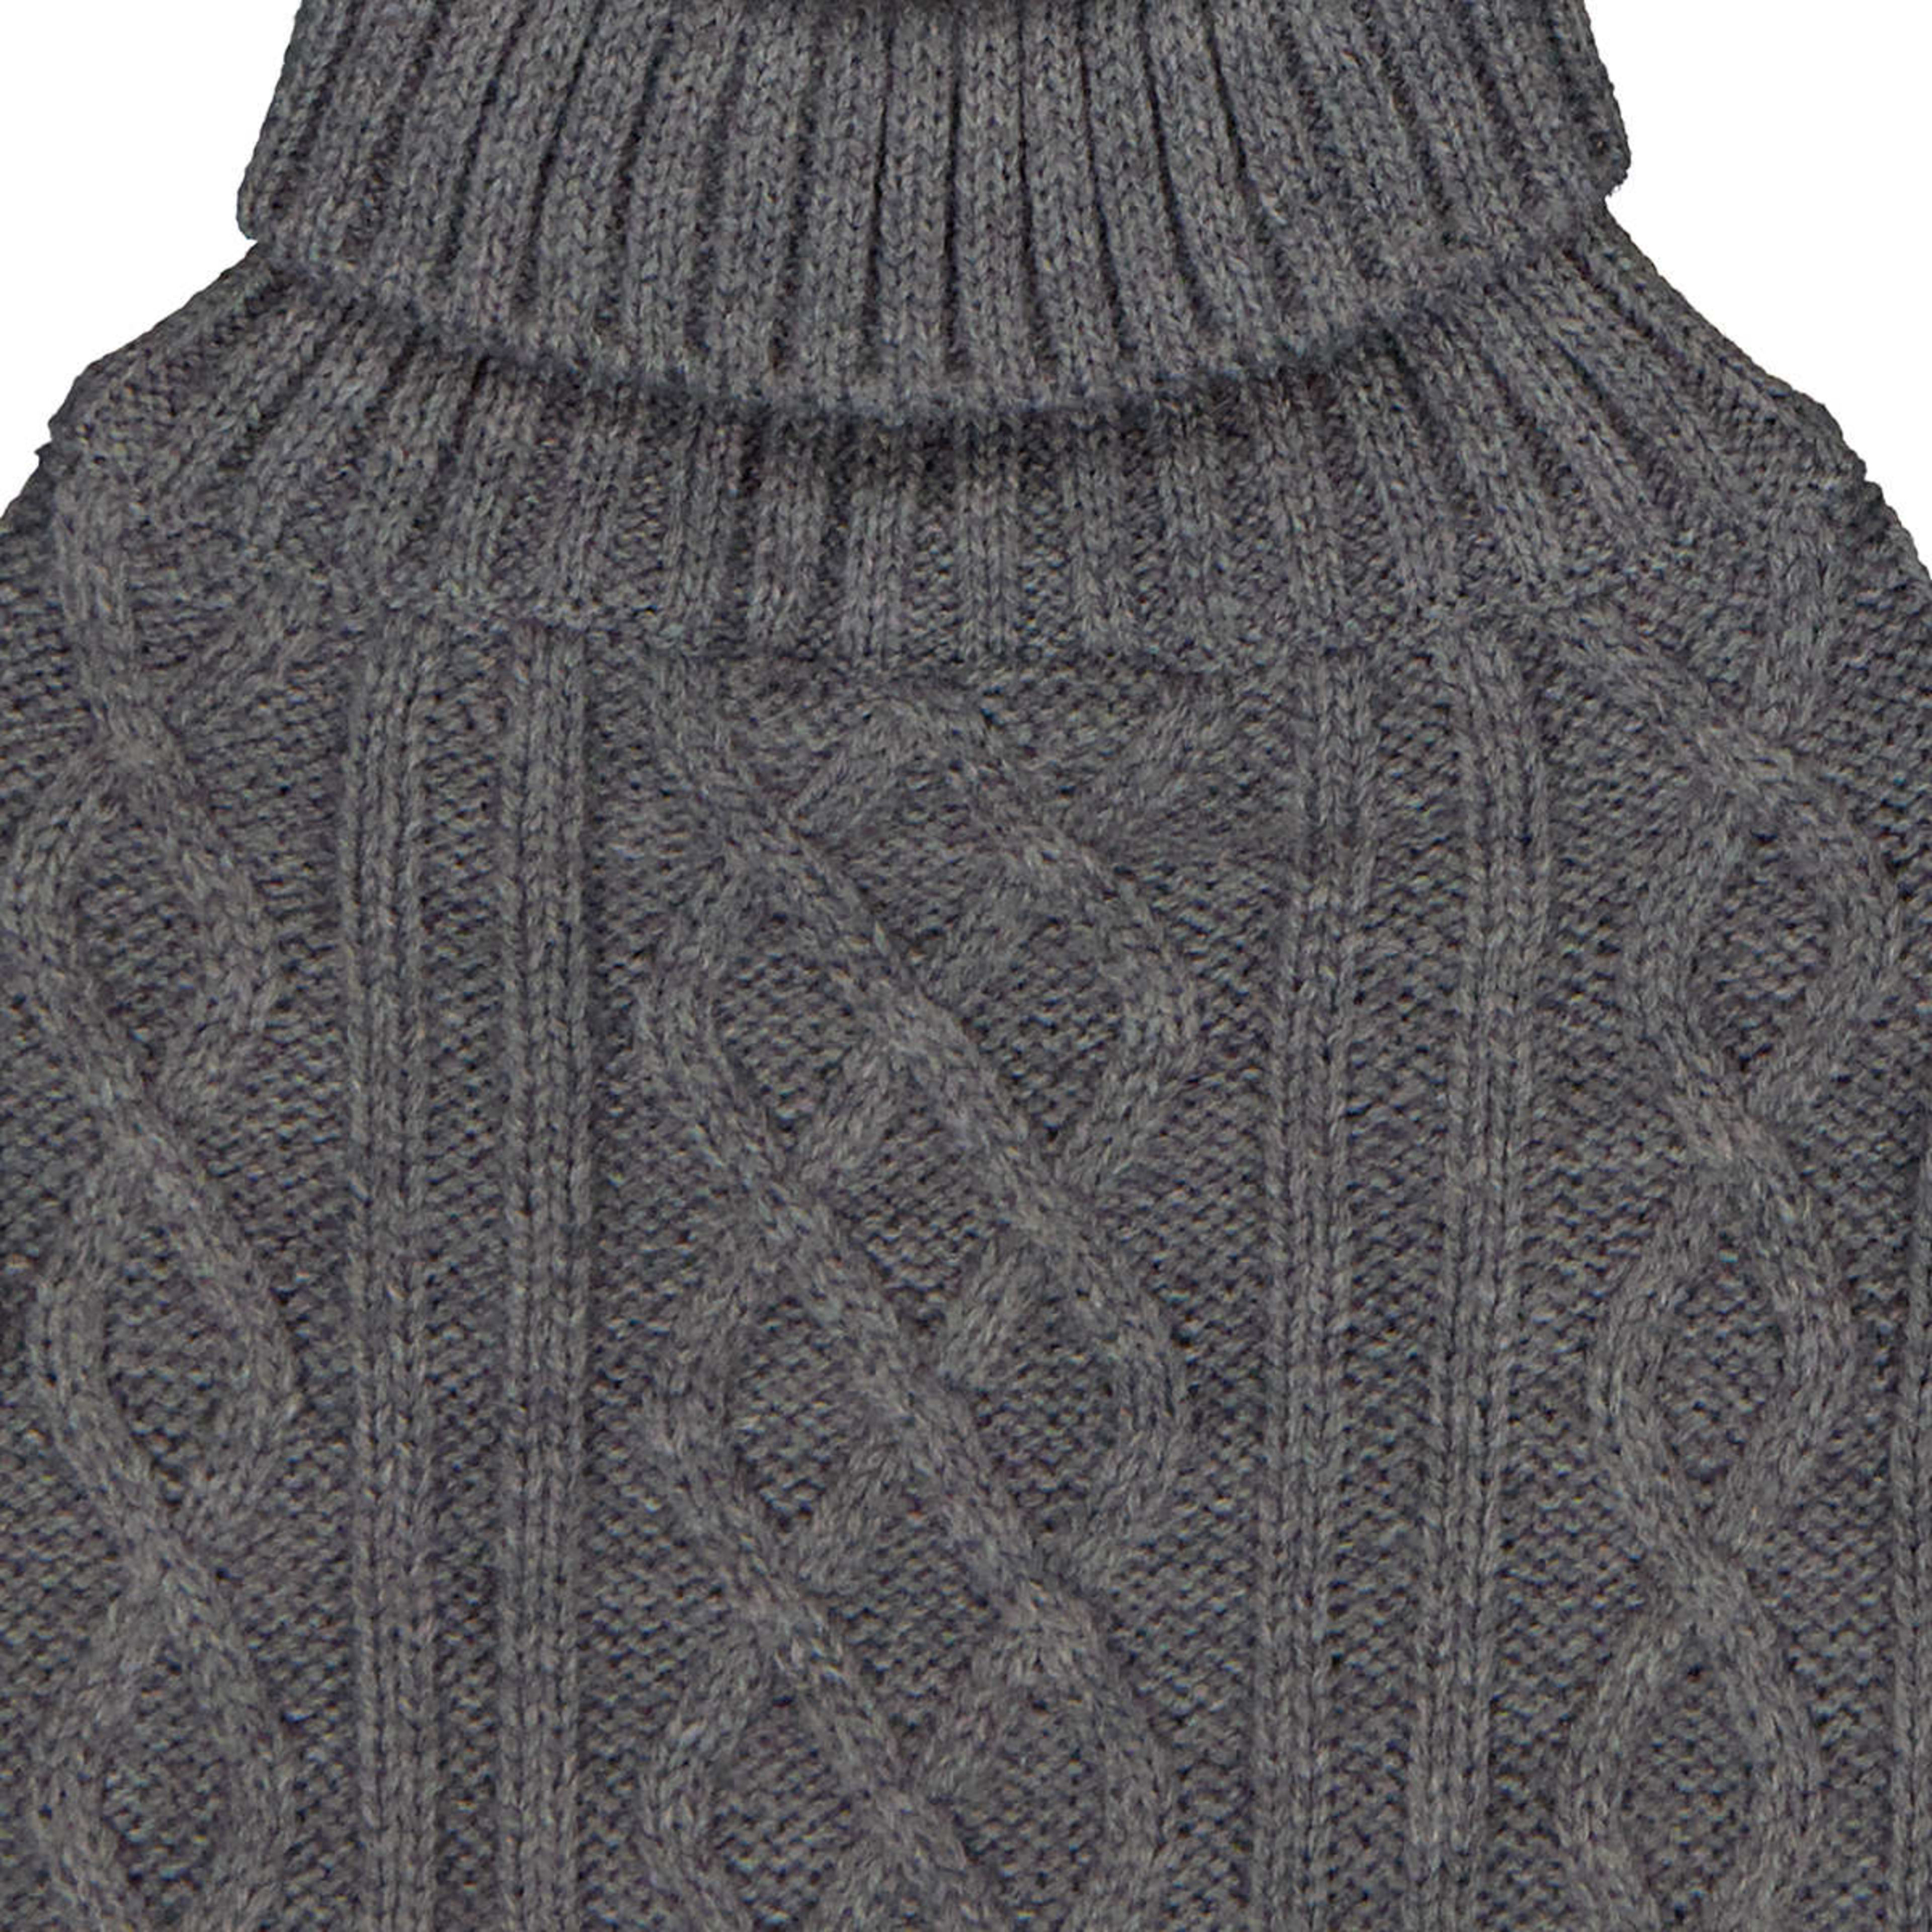 Pet Cable Knit Jumper - Medium, Grey - Kmart NZ